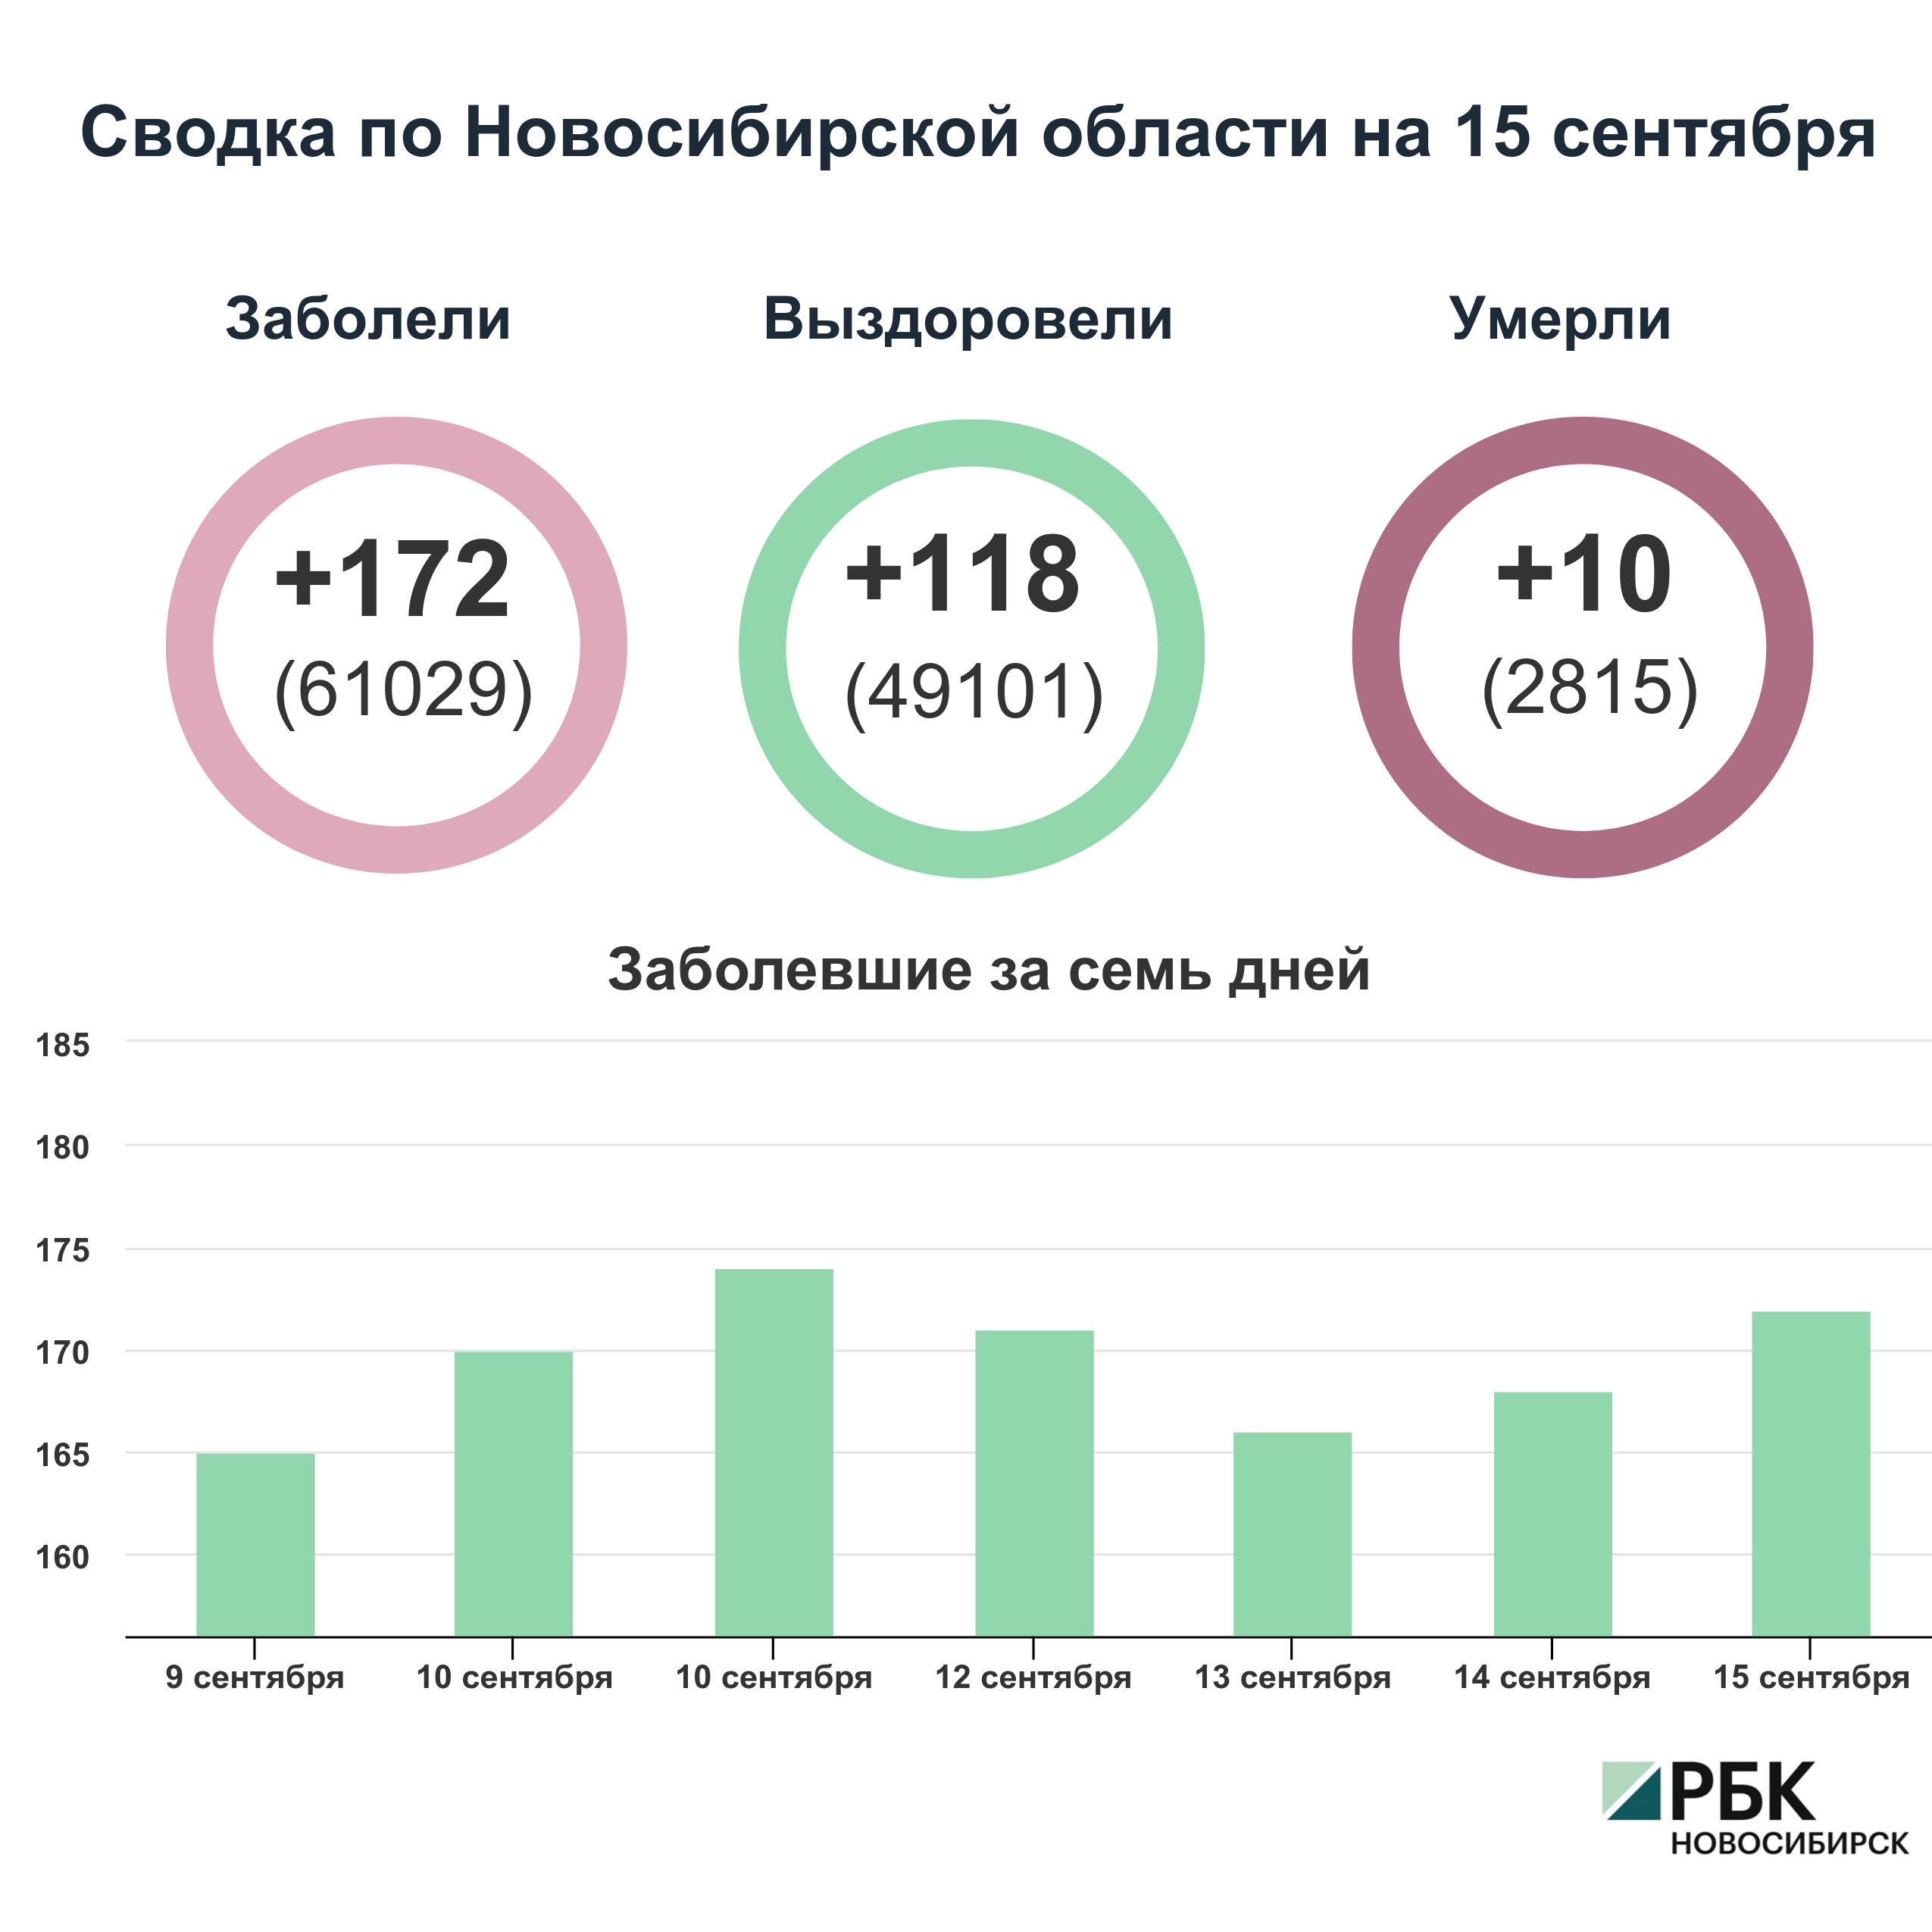 Коронавирус в Новосибирске: сводка на 15 сентября